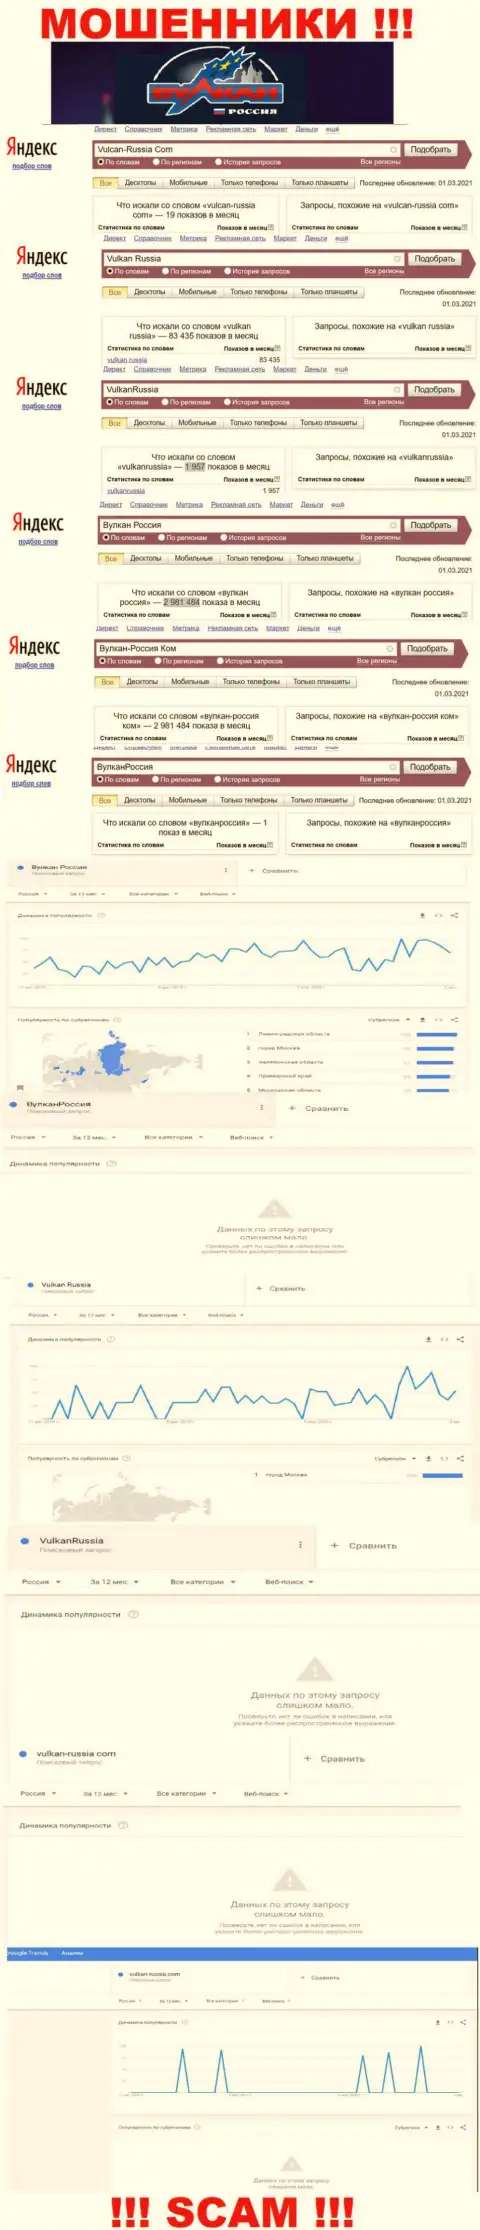 Статистика суммарного числа просмотров информации об обманщиках Vulcan-Russia Com во всемирной интернет сети